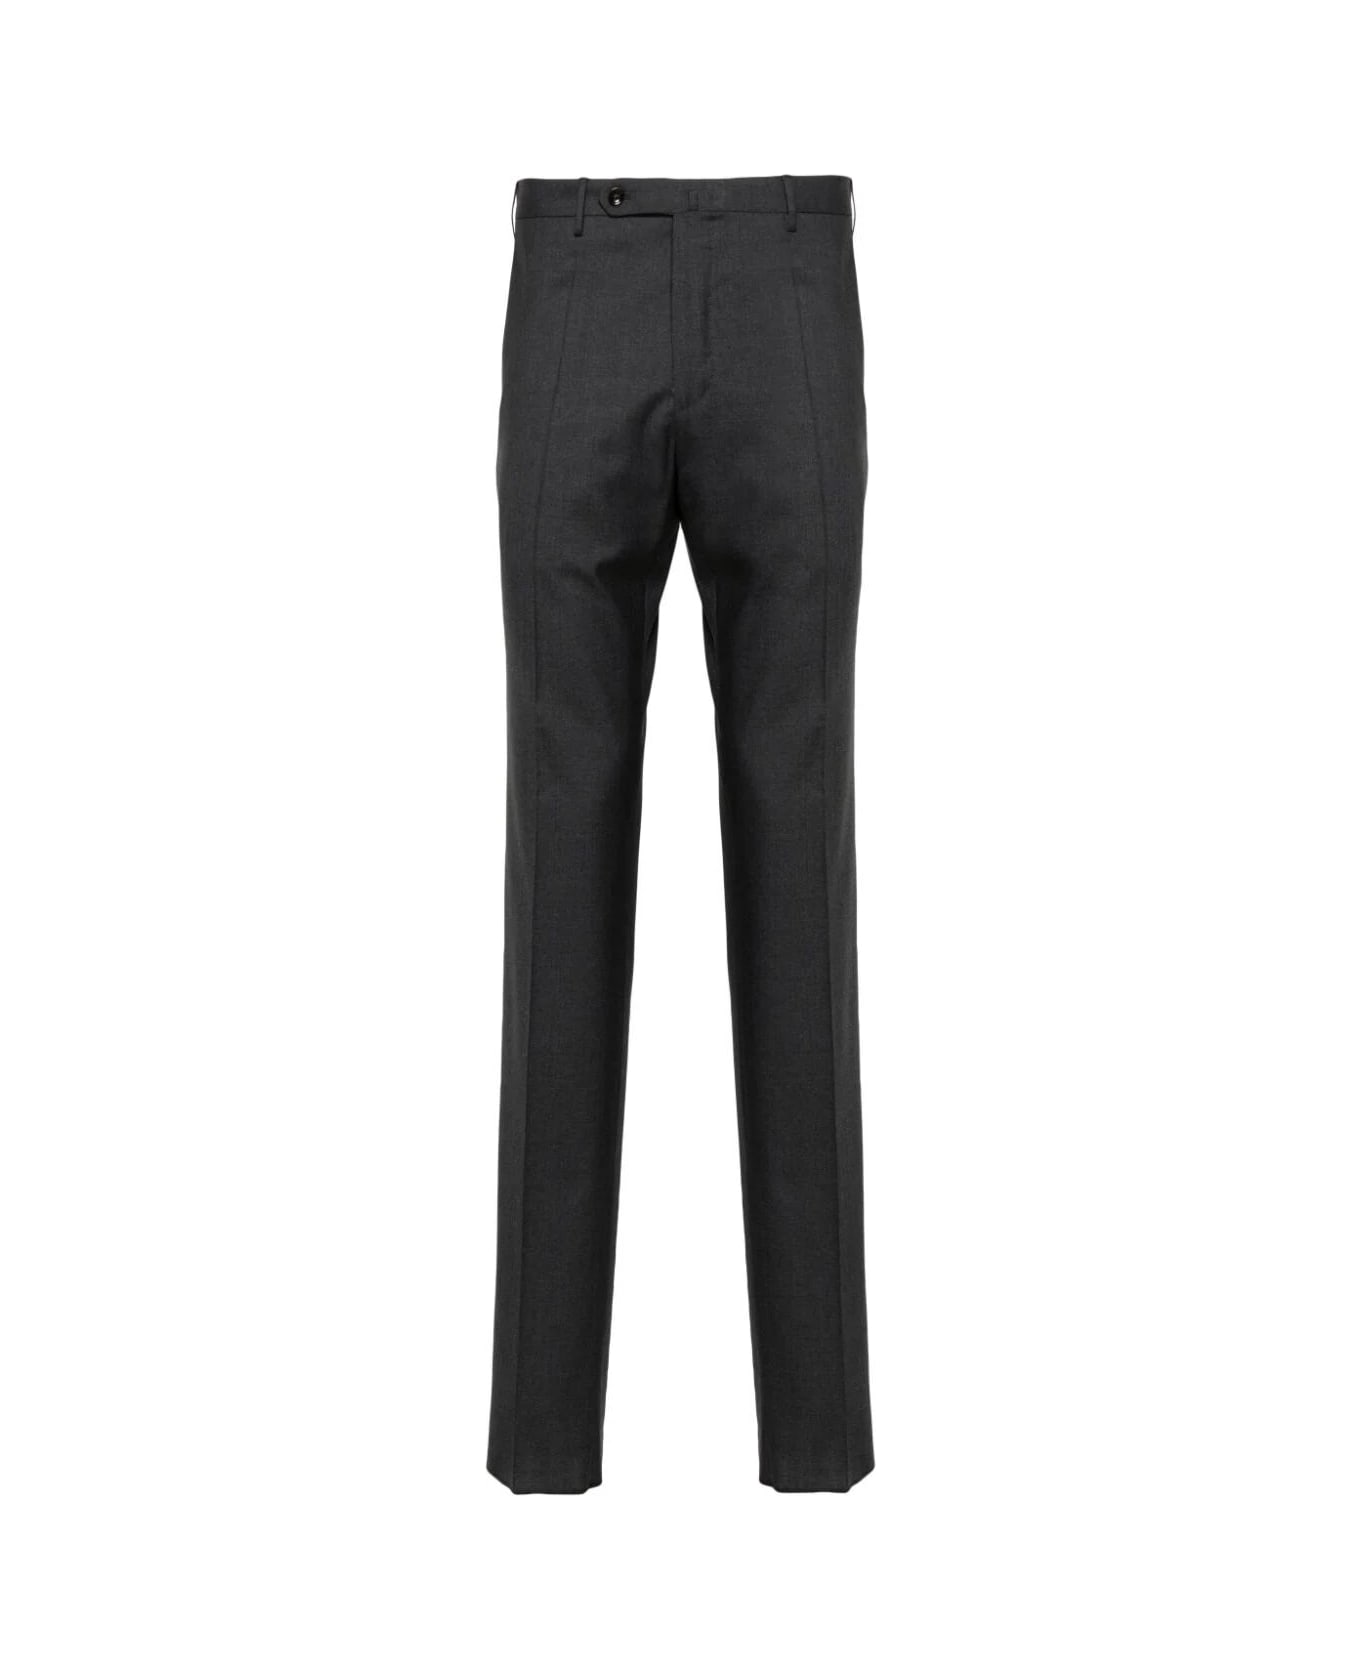 Incotex Model 35 Slim Fit Trousers - Dark Grey ボトムス